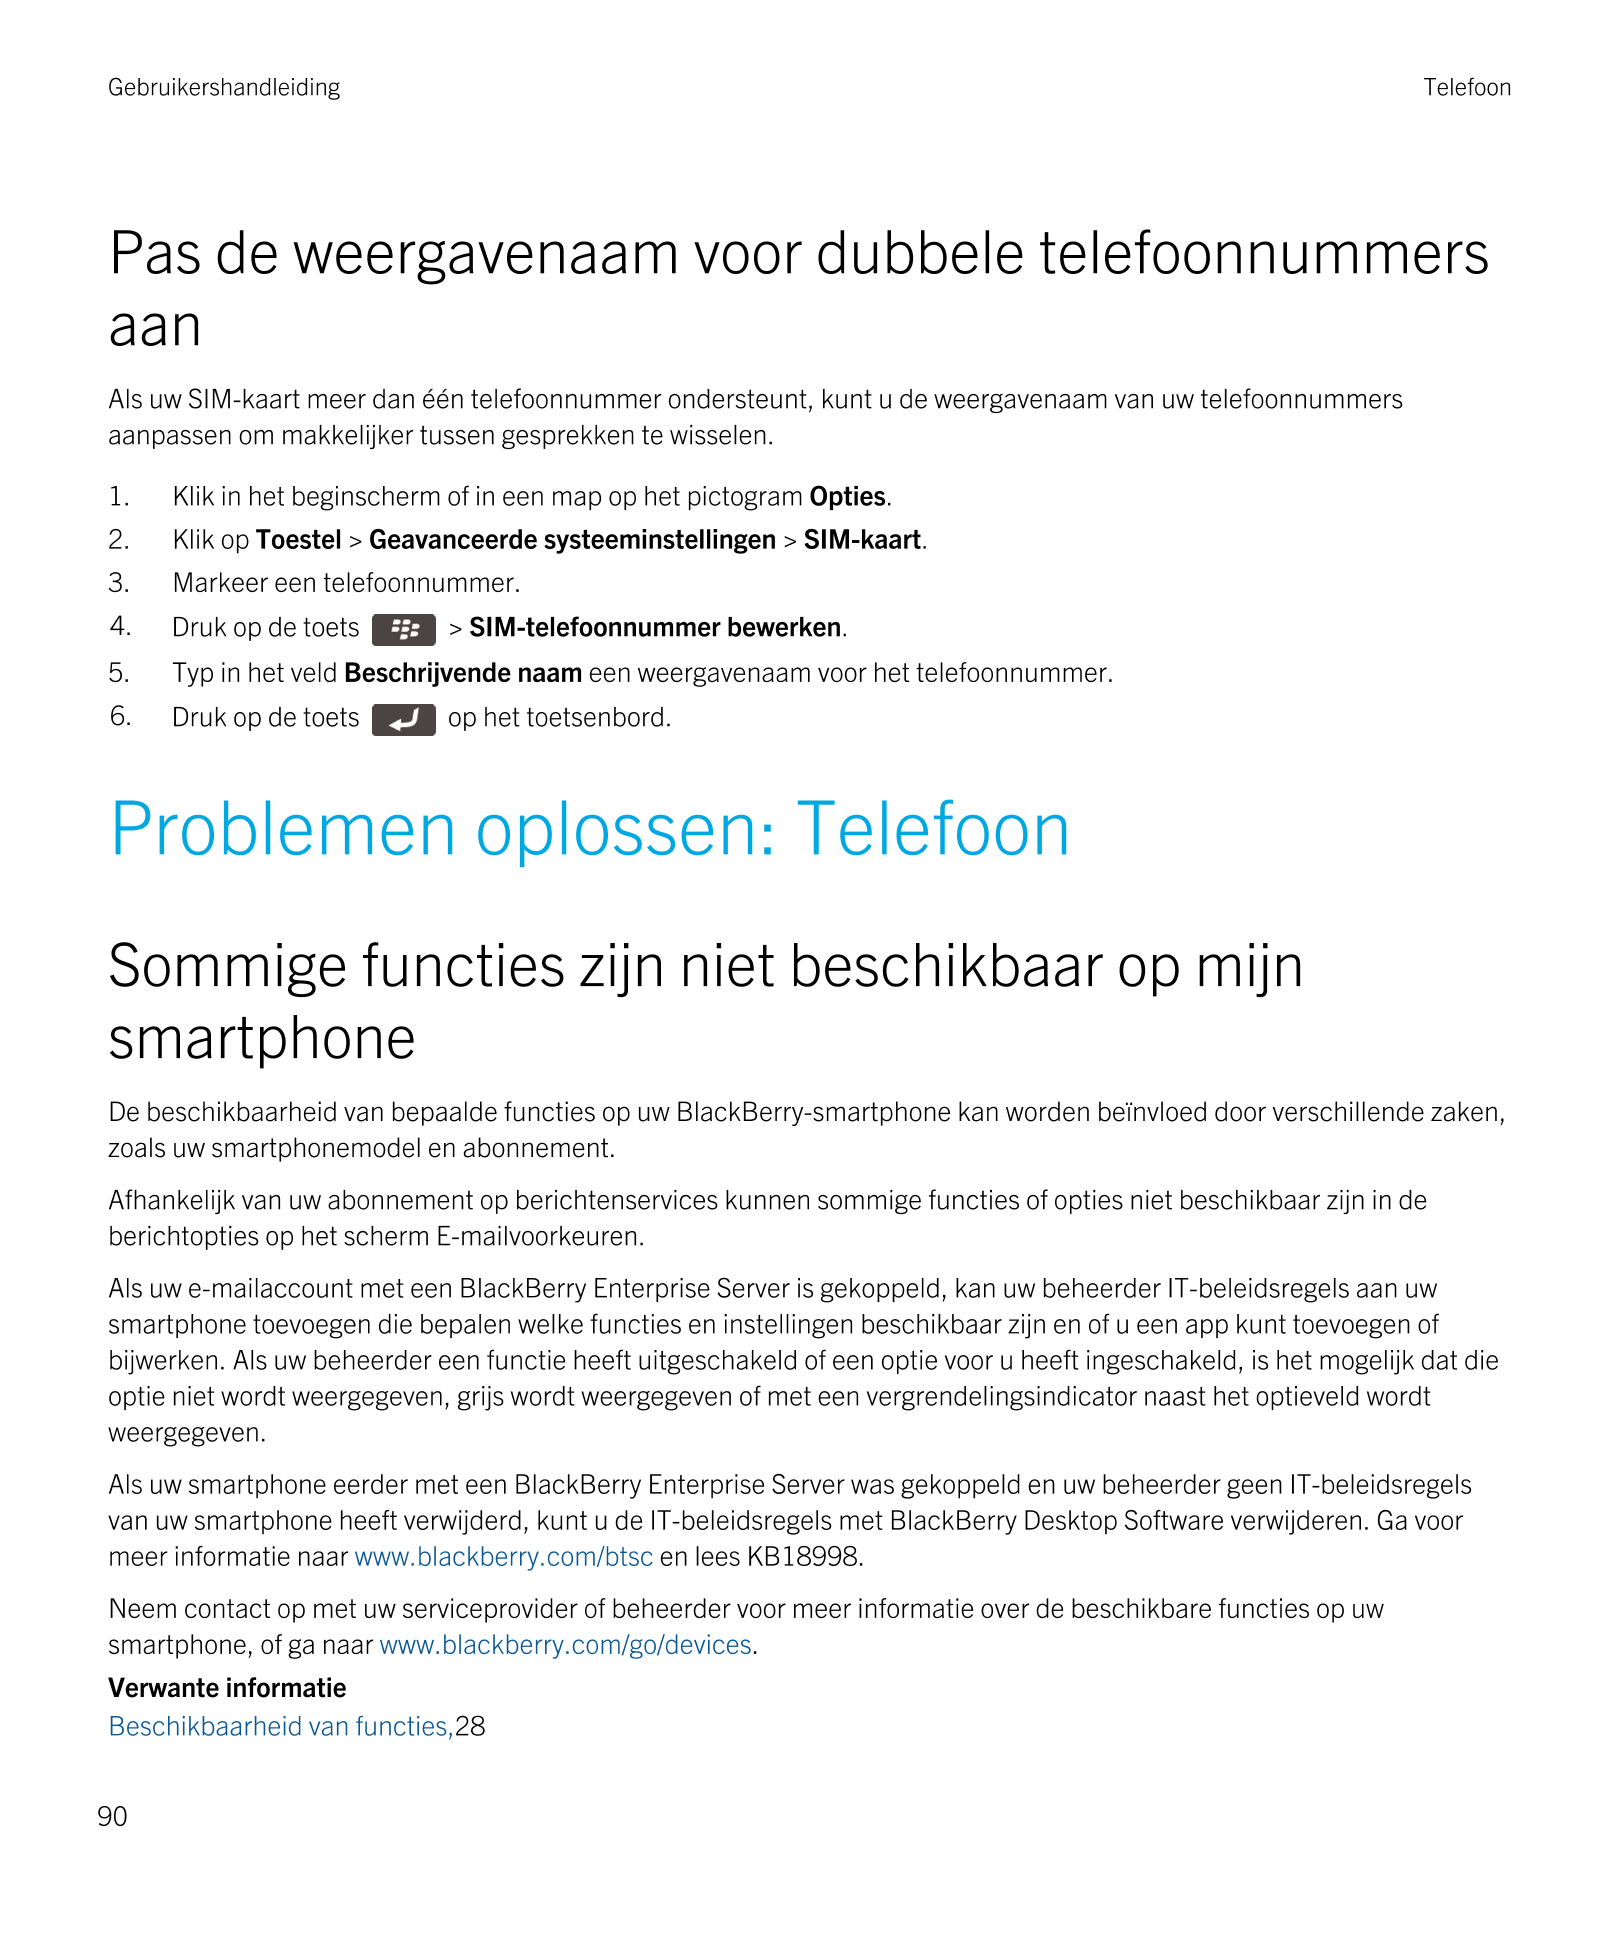 Gebruikershandleiding Telefoon
Pas de weergavenaam voor dubbele telefoonnummers 
aan
Als uw SIM-kaart meer dan één telefoonnumme